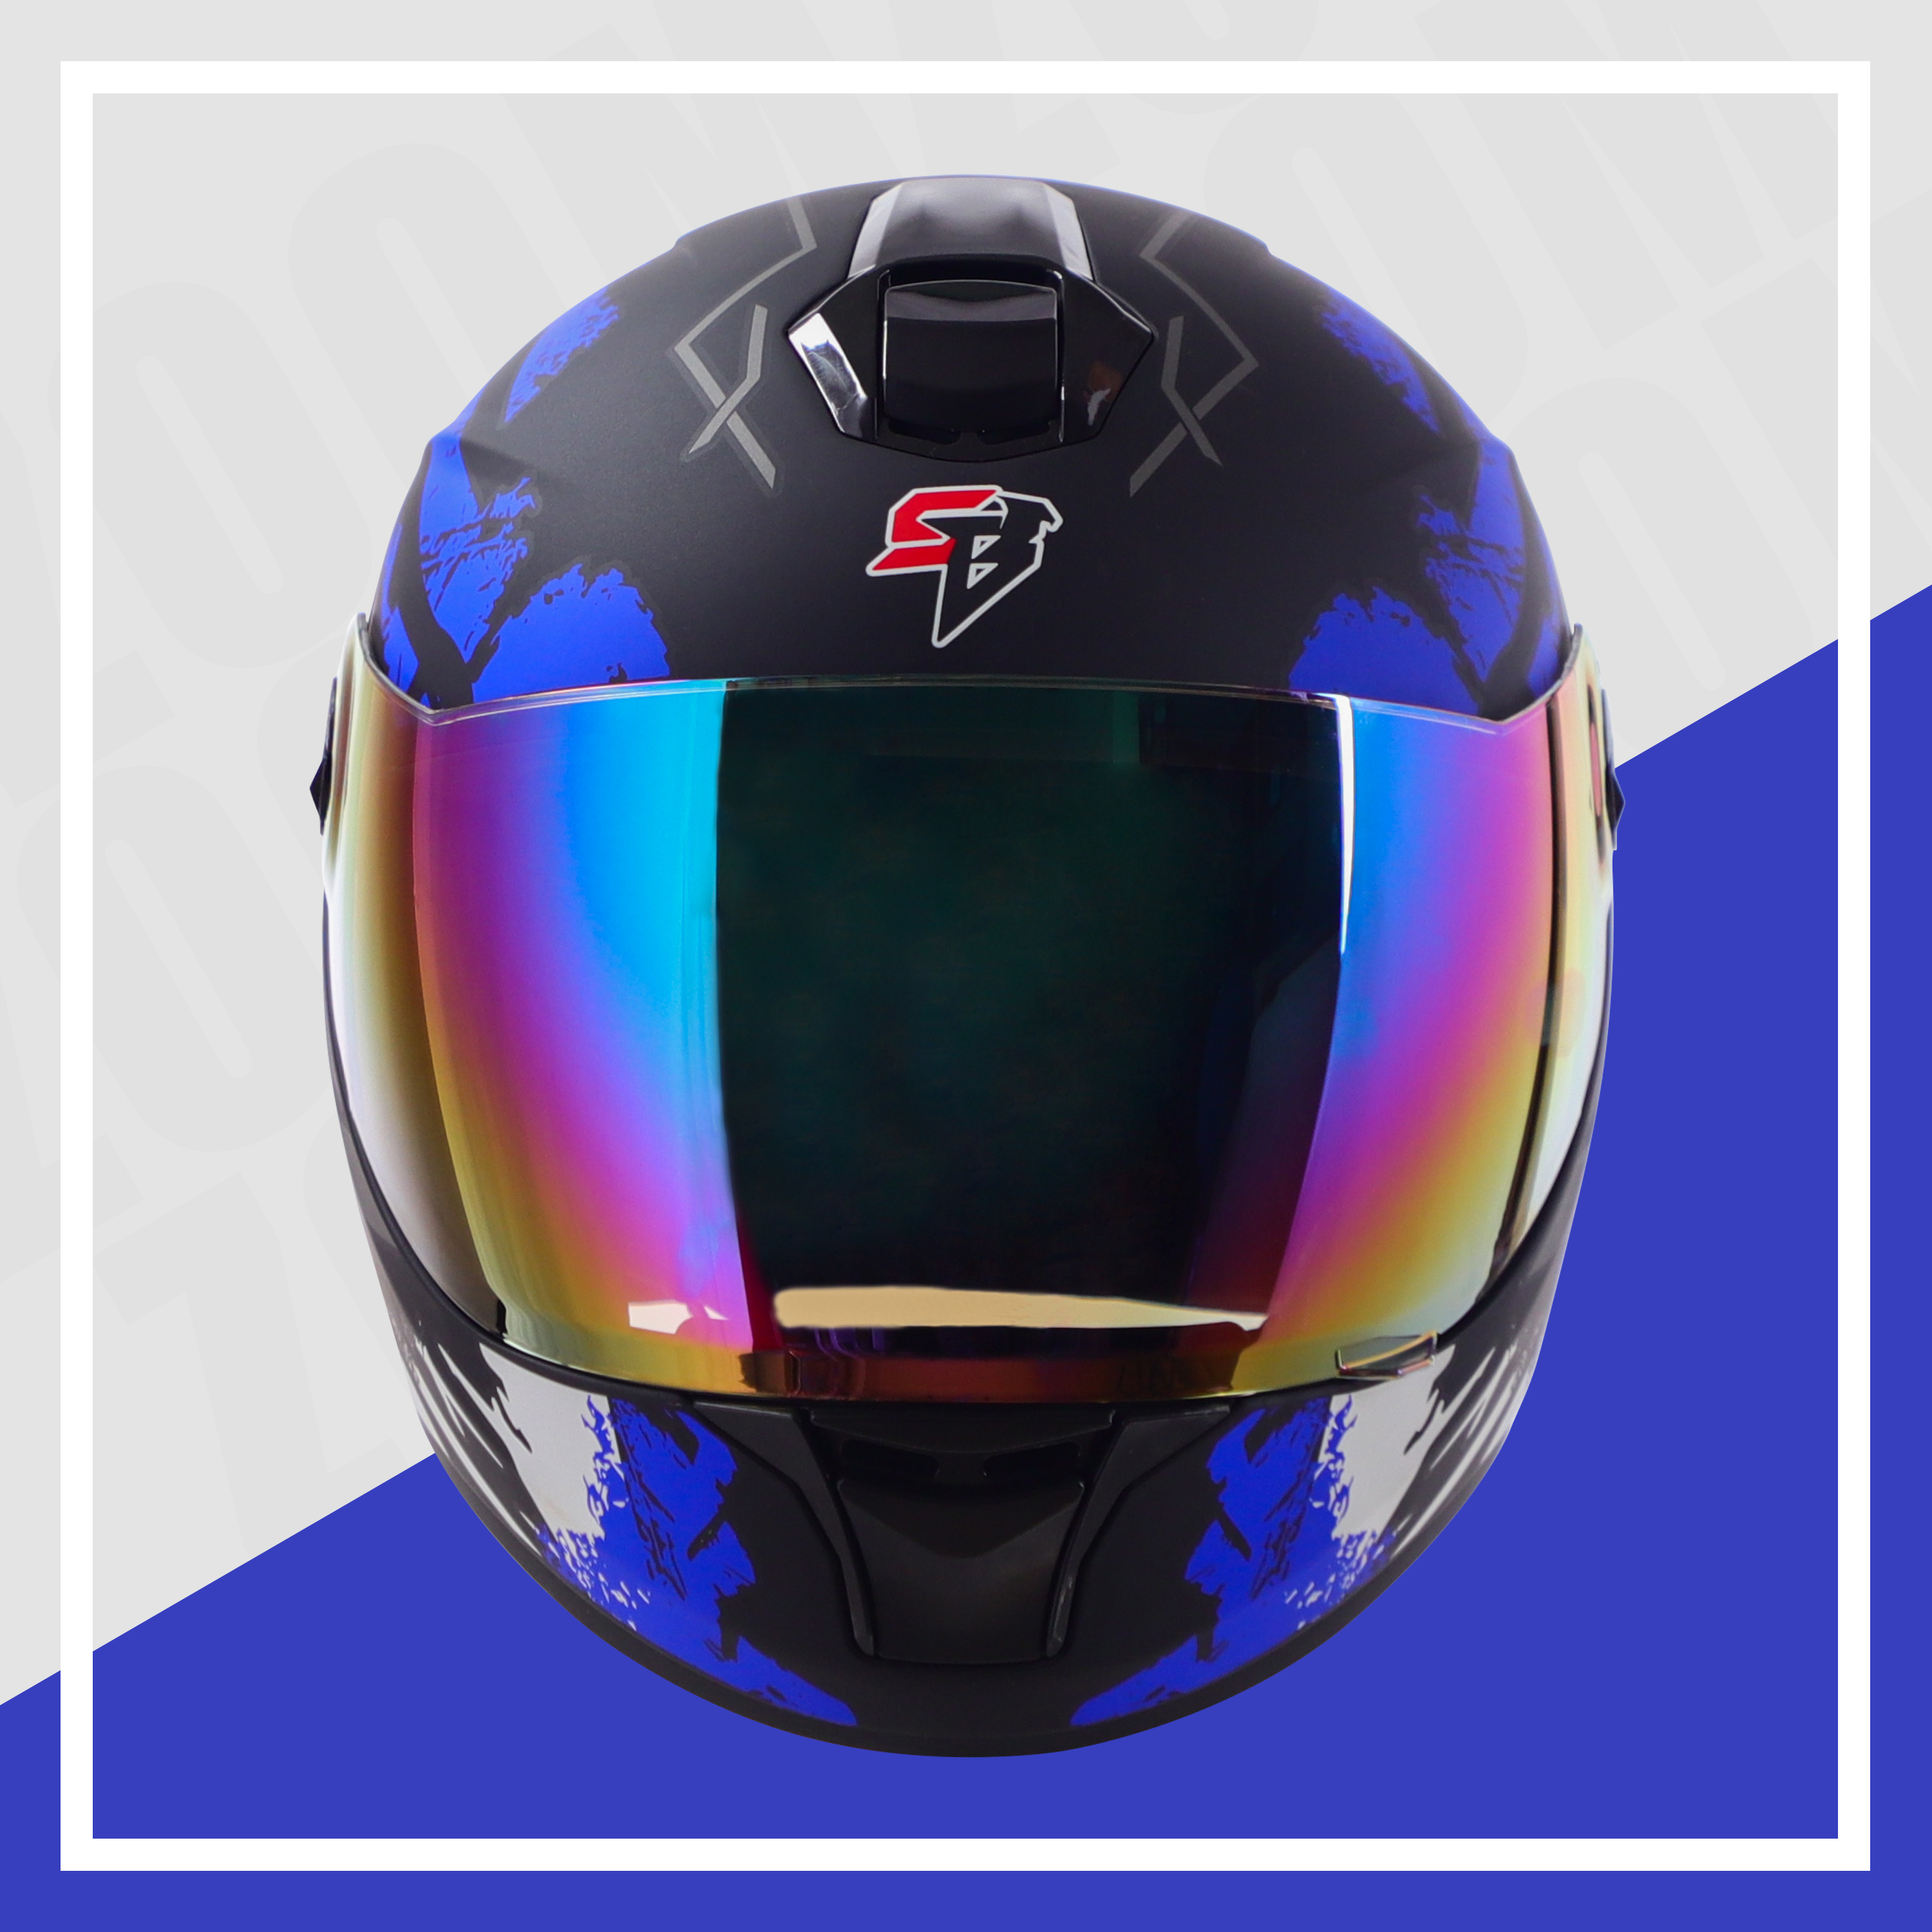 Steelbird SBH-11 Zoom Racer ISI Certified Full Face Graphic Helmet For Men And Women (Matt Black Blue With Chrome Rainbow Visor)